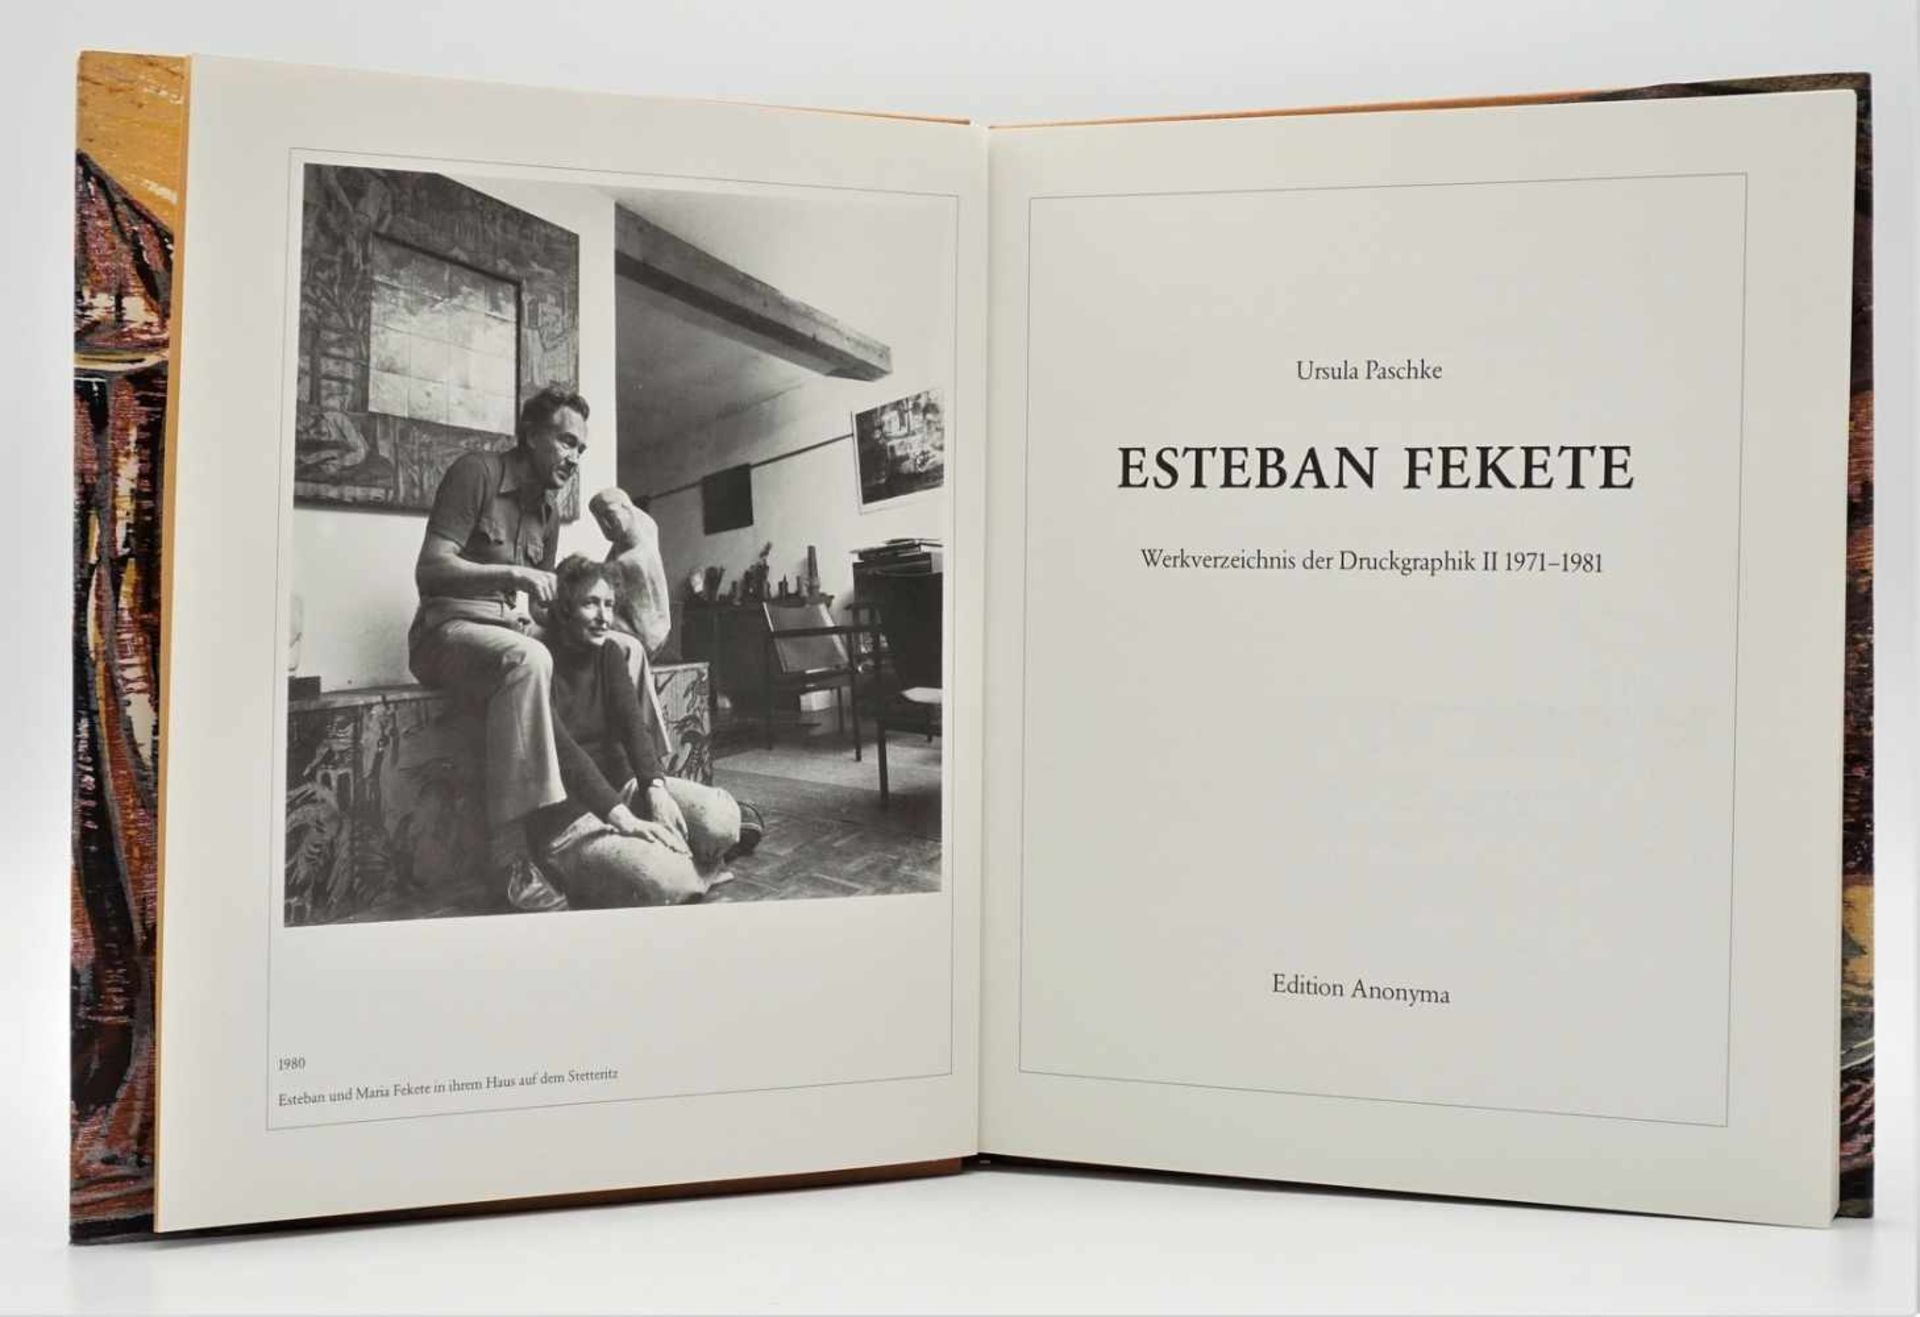 Ursula Paschke, "Esteban Fekete - Werkverzeichnis der Druckgraphik II 1971-1981" - Image 3 of 3